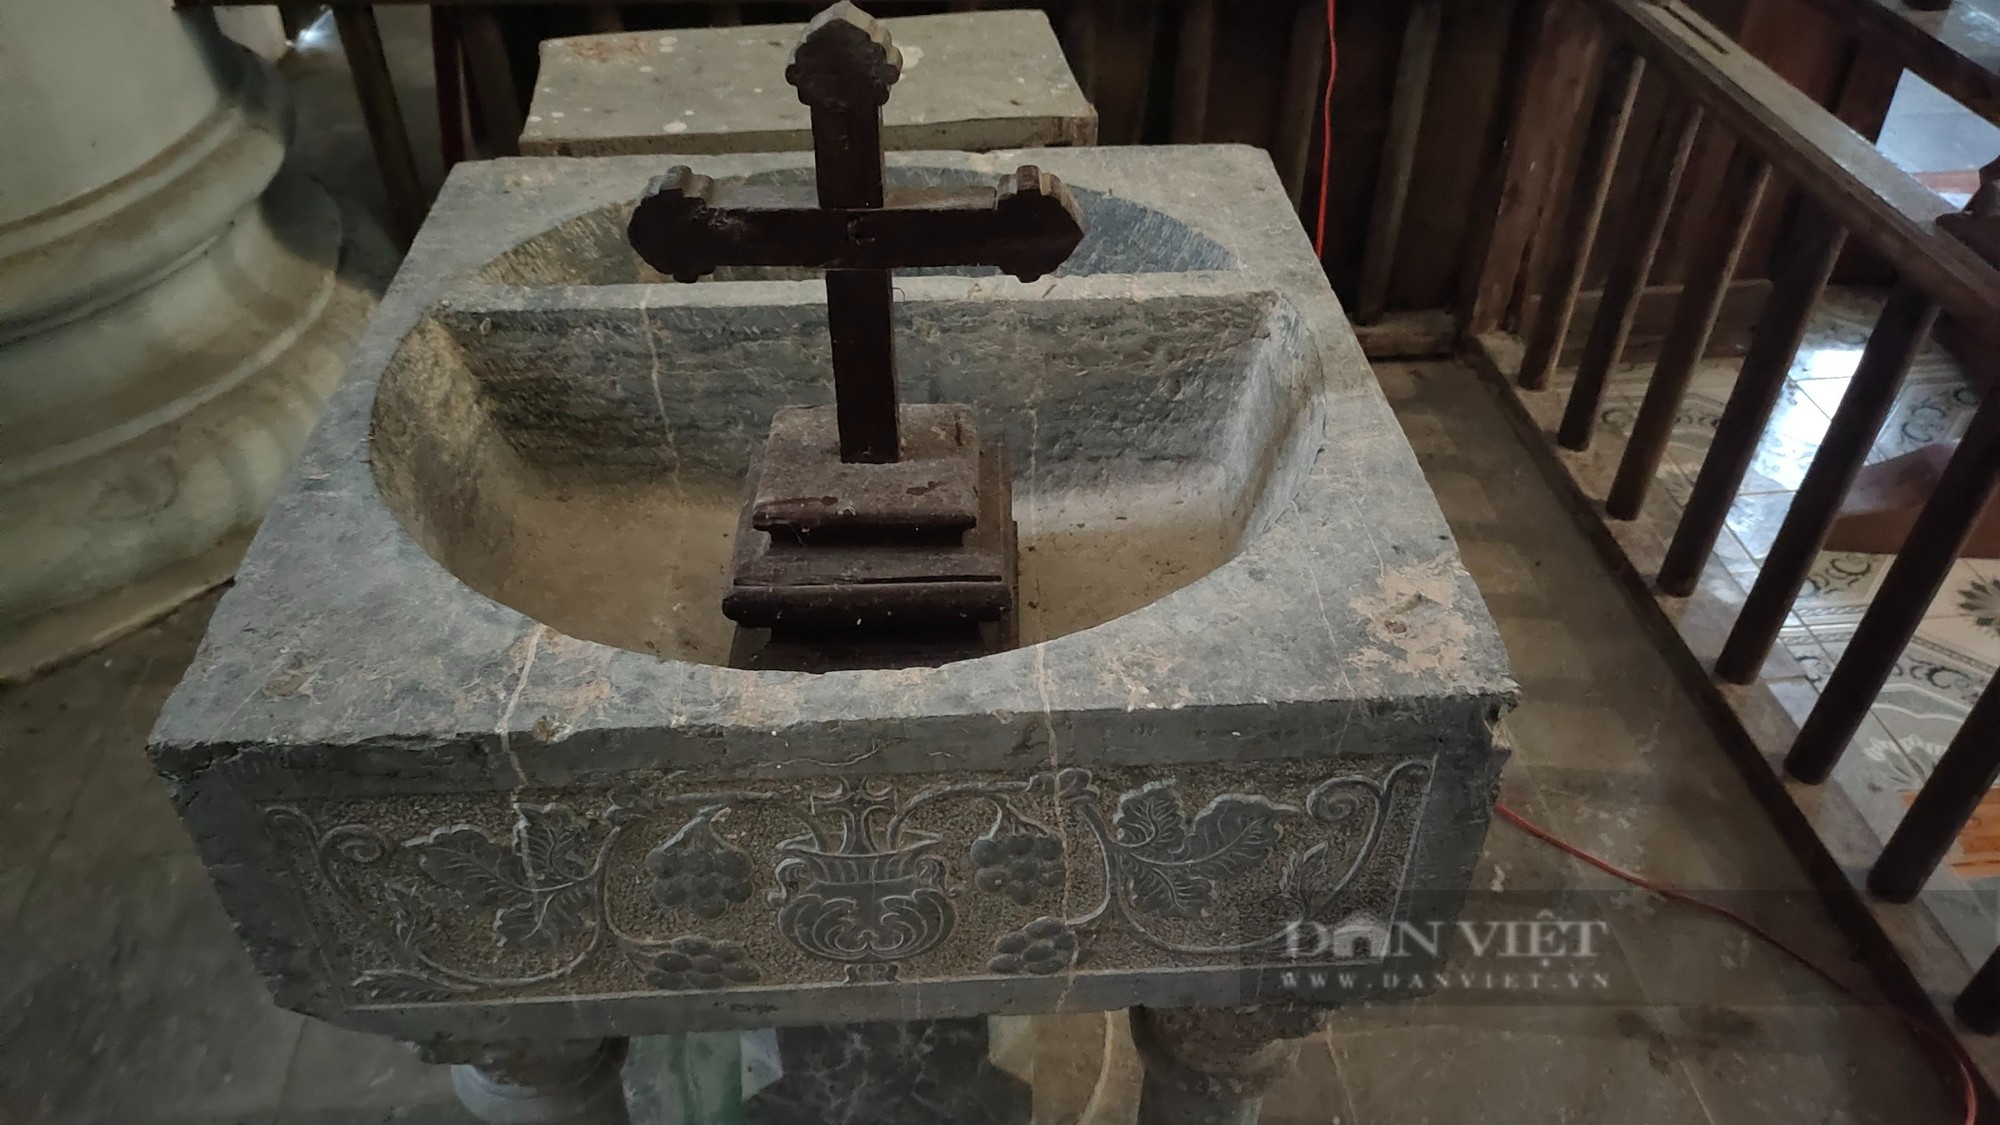 Bí ẩn về 2 bộ hài cốt đang được lưu giữ tại nhà thờ hơn 100 tuổi ở Ninh Bình - Ảnh 2.